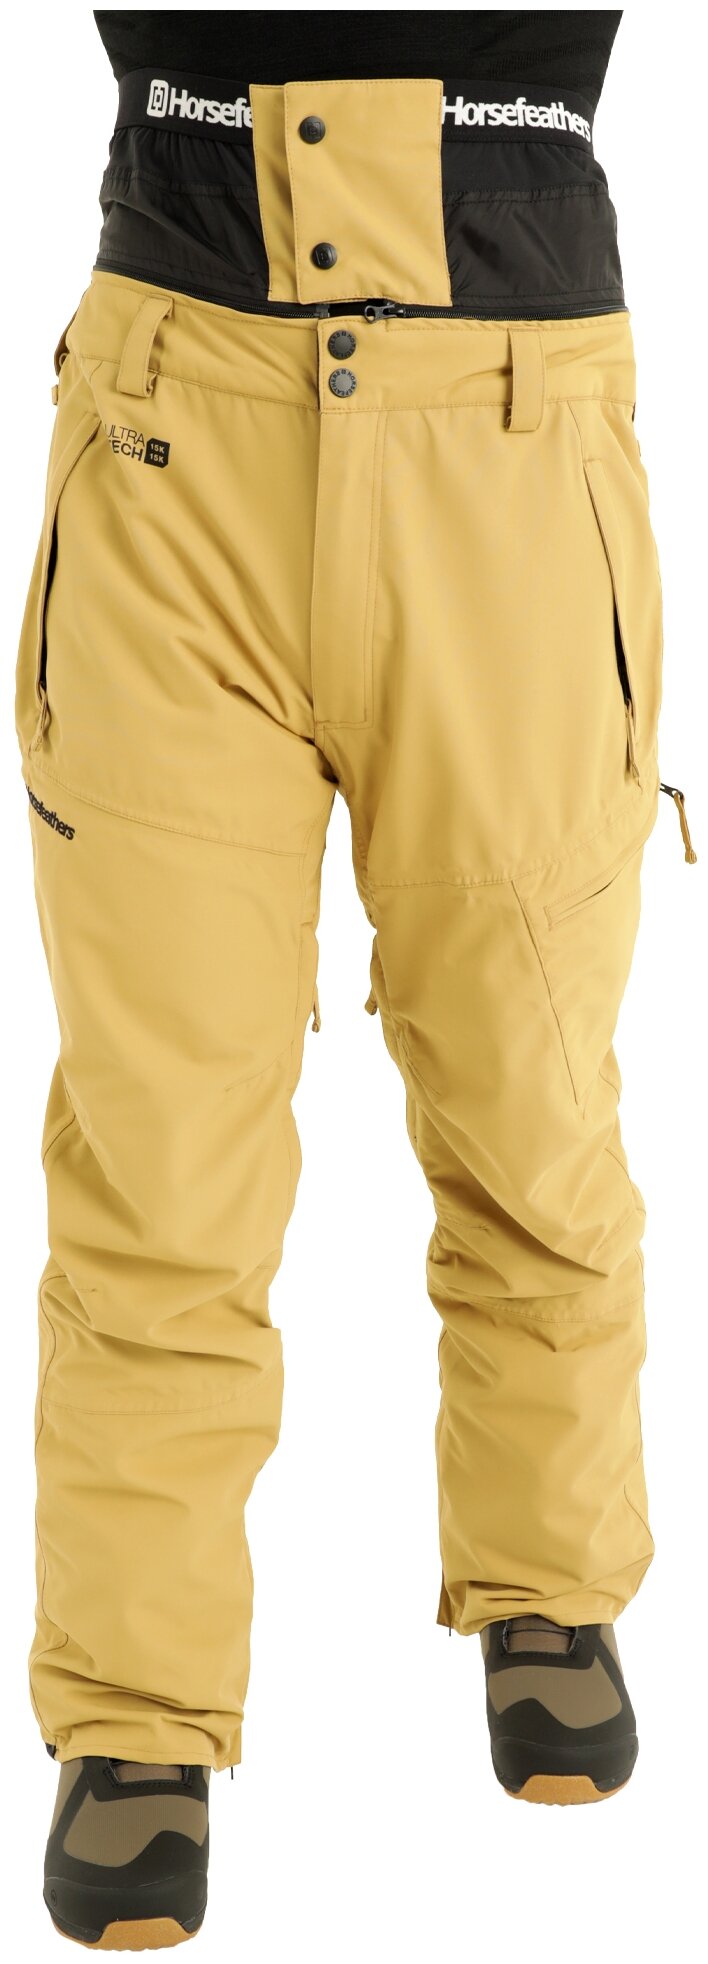 брюки для сноубординга Horsefeathers, подкладка, карманы, мембрана, регулировка объема талии, водонепроницаемые